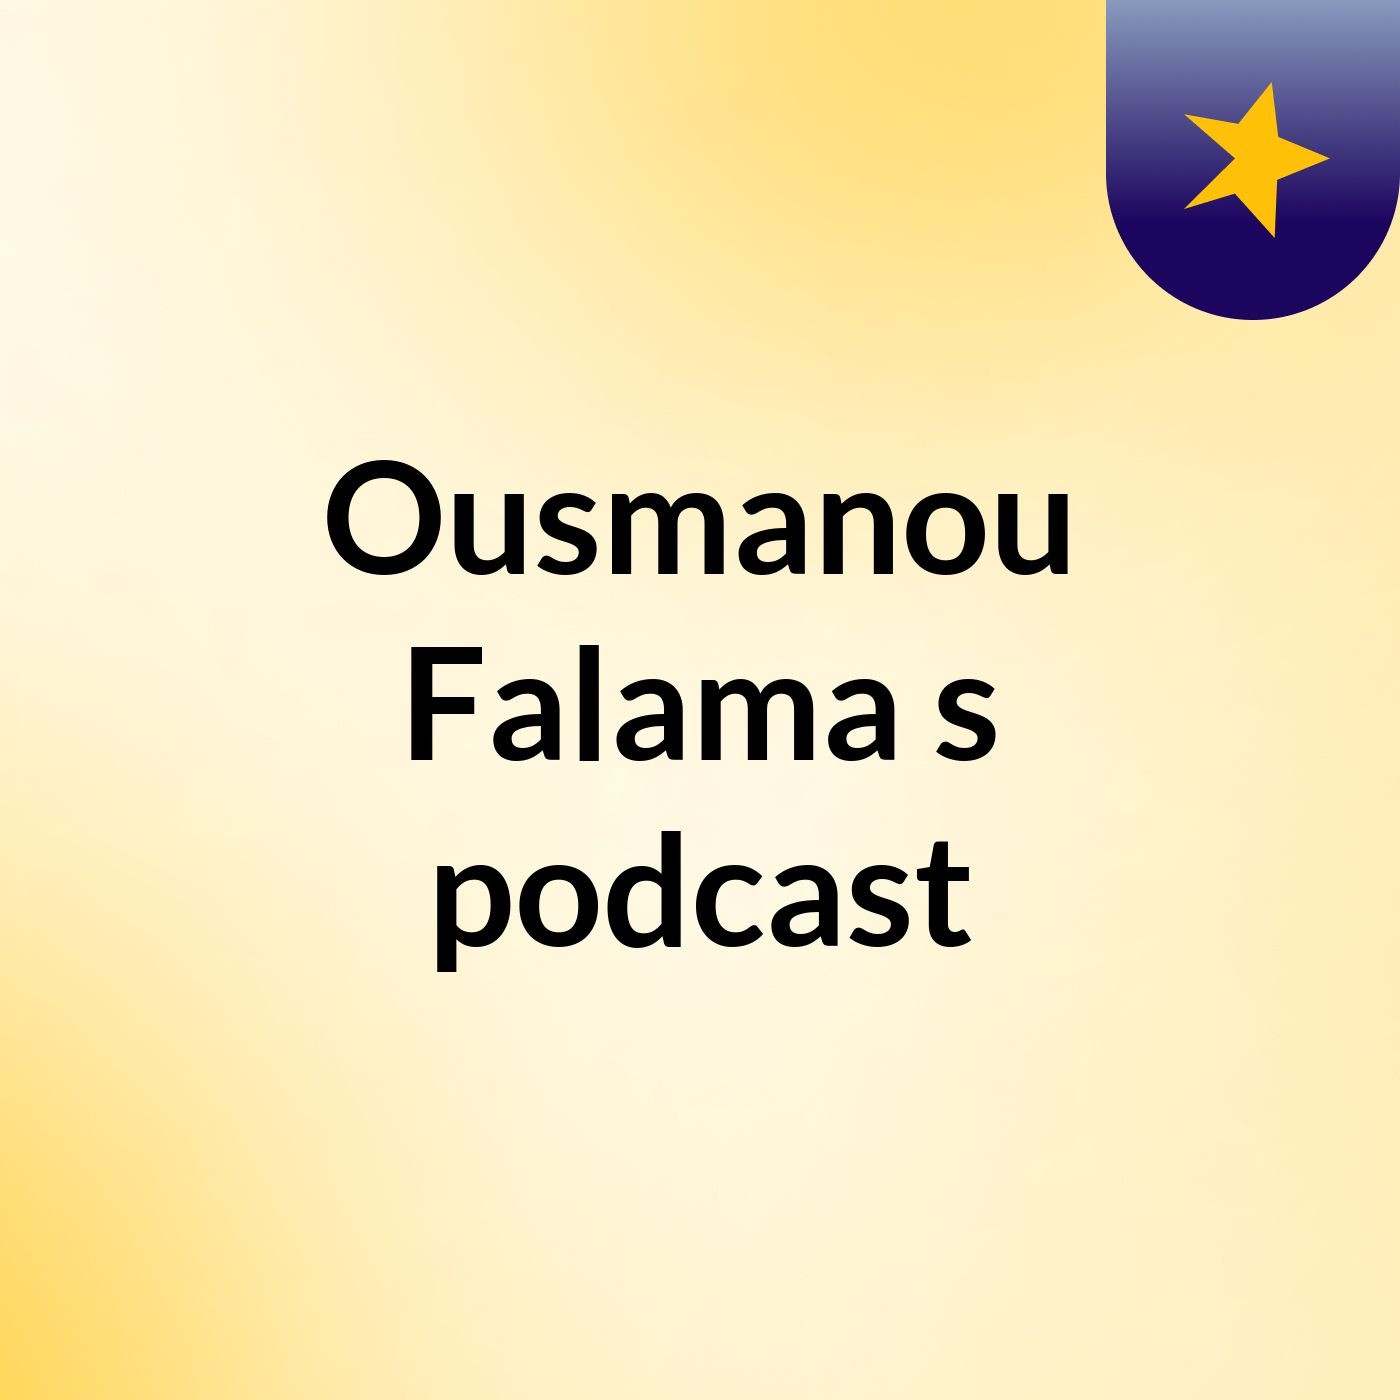 Ousmanou Falama's podcast